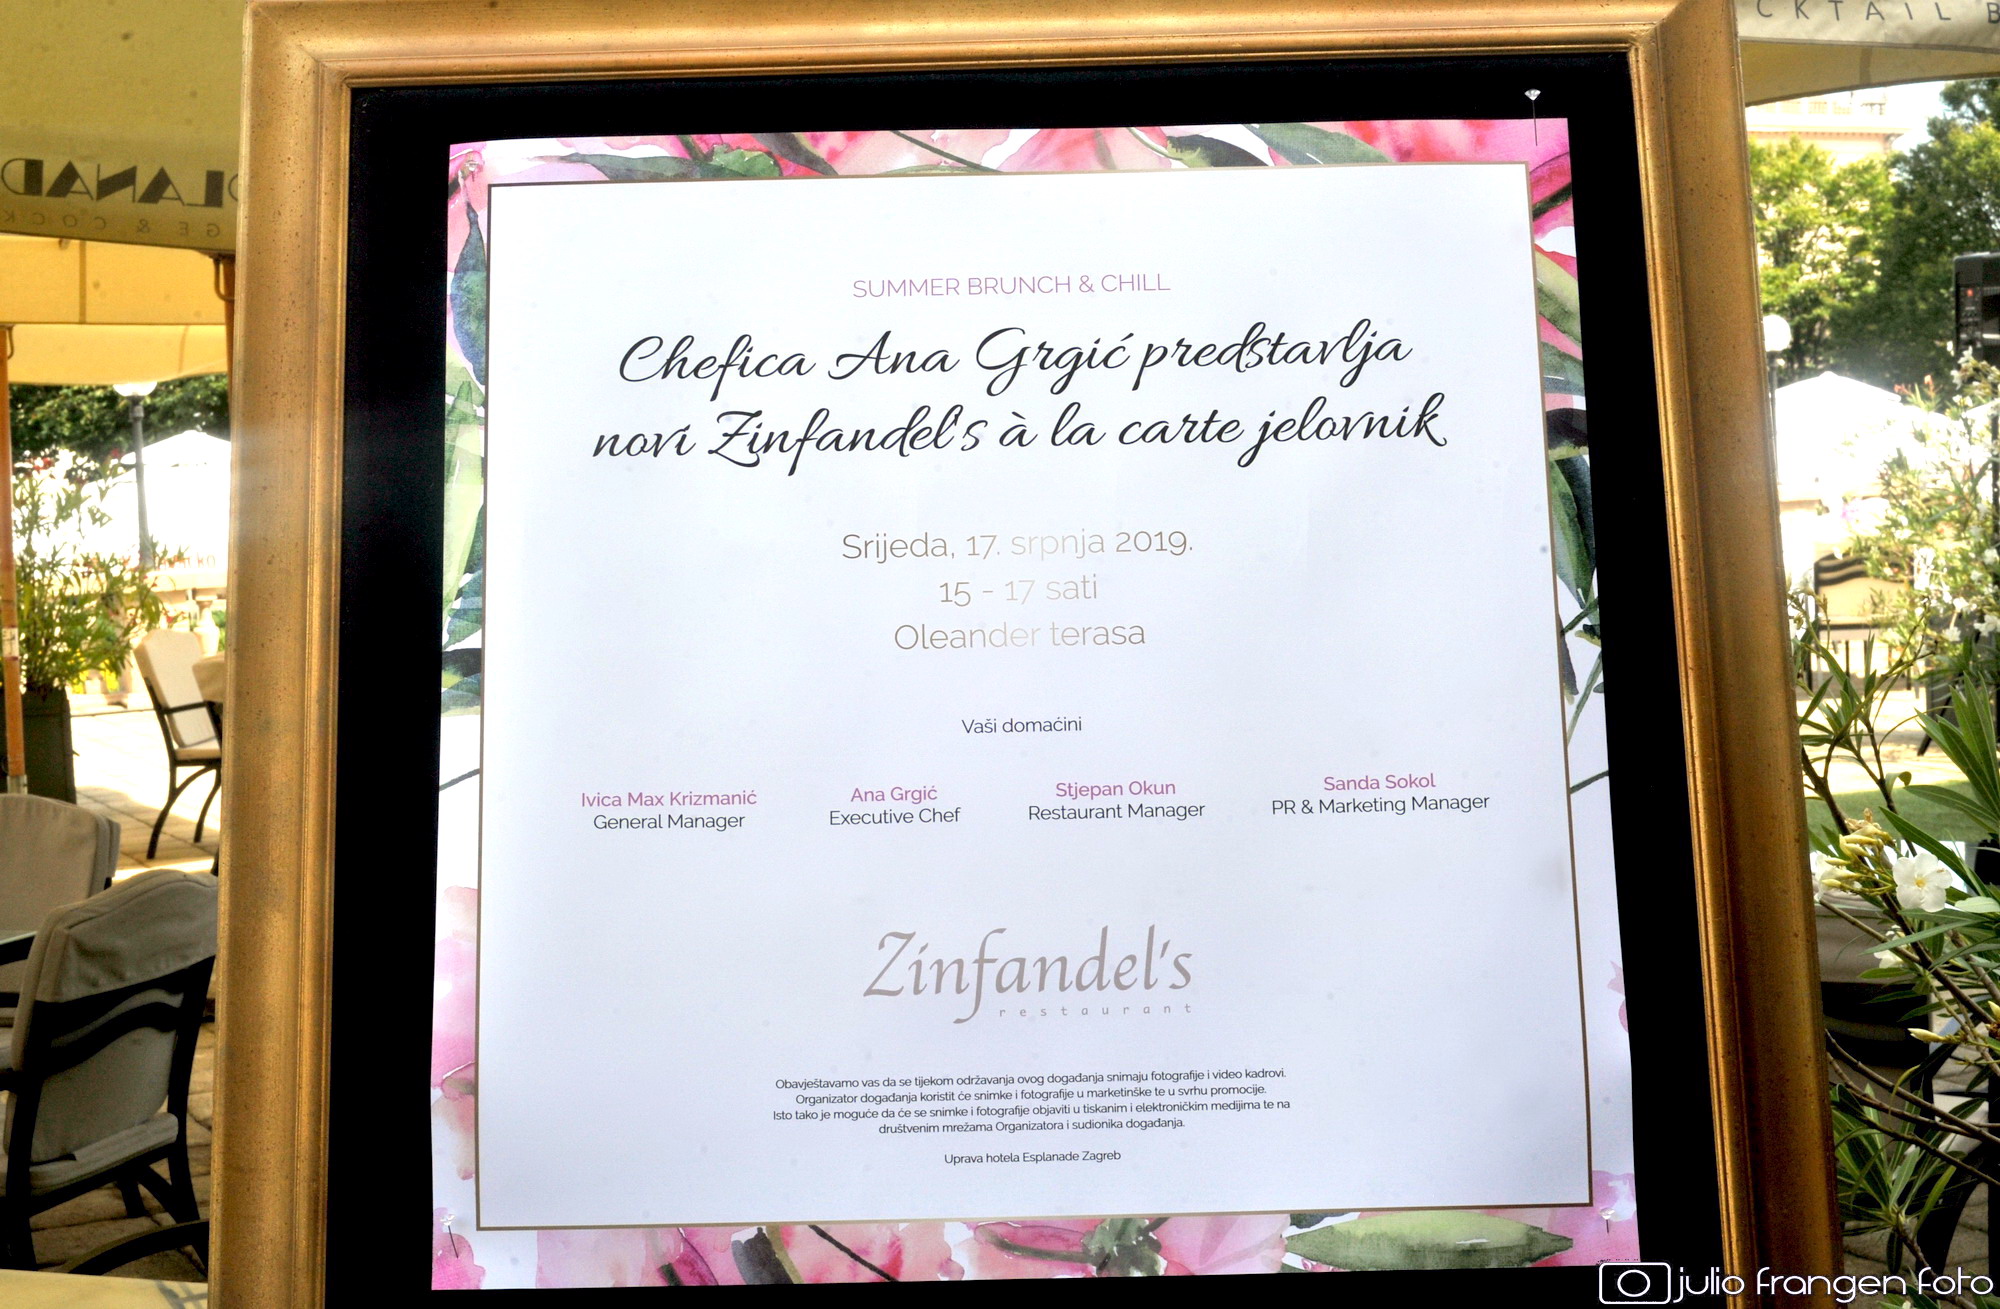 Restoran Zinfandel’s i terasa Oleander i ovoga su ljeta nezaobilazna destinacija istinskih gurmana